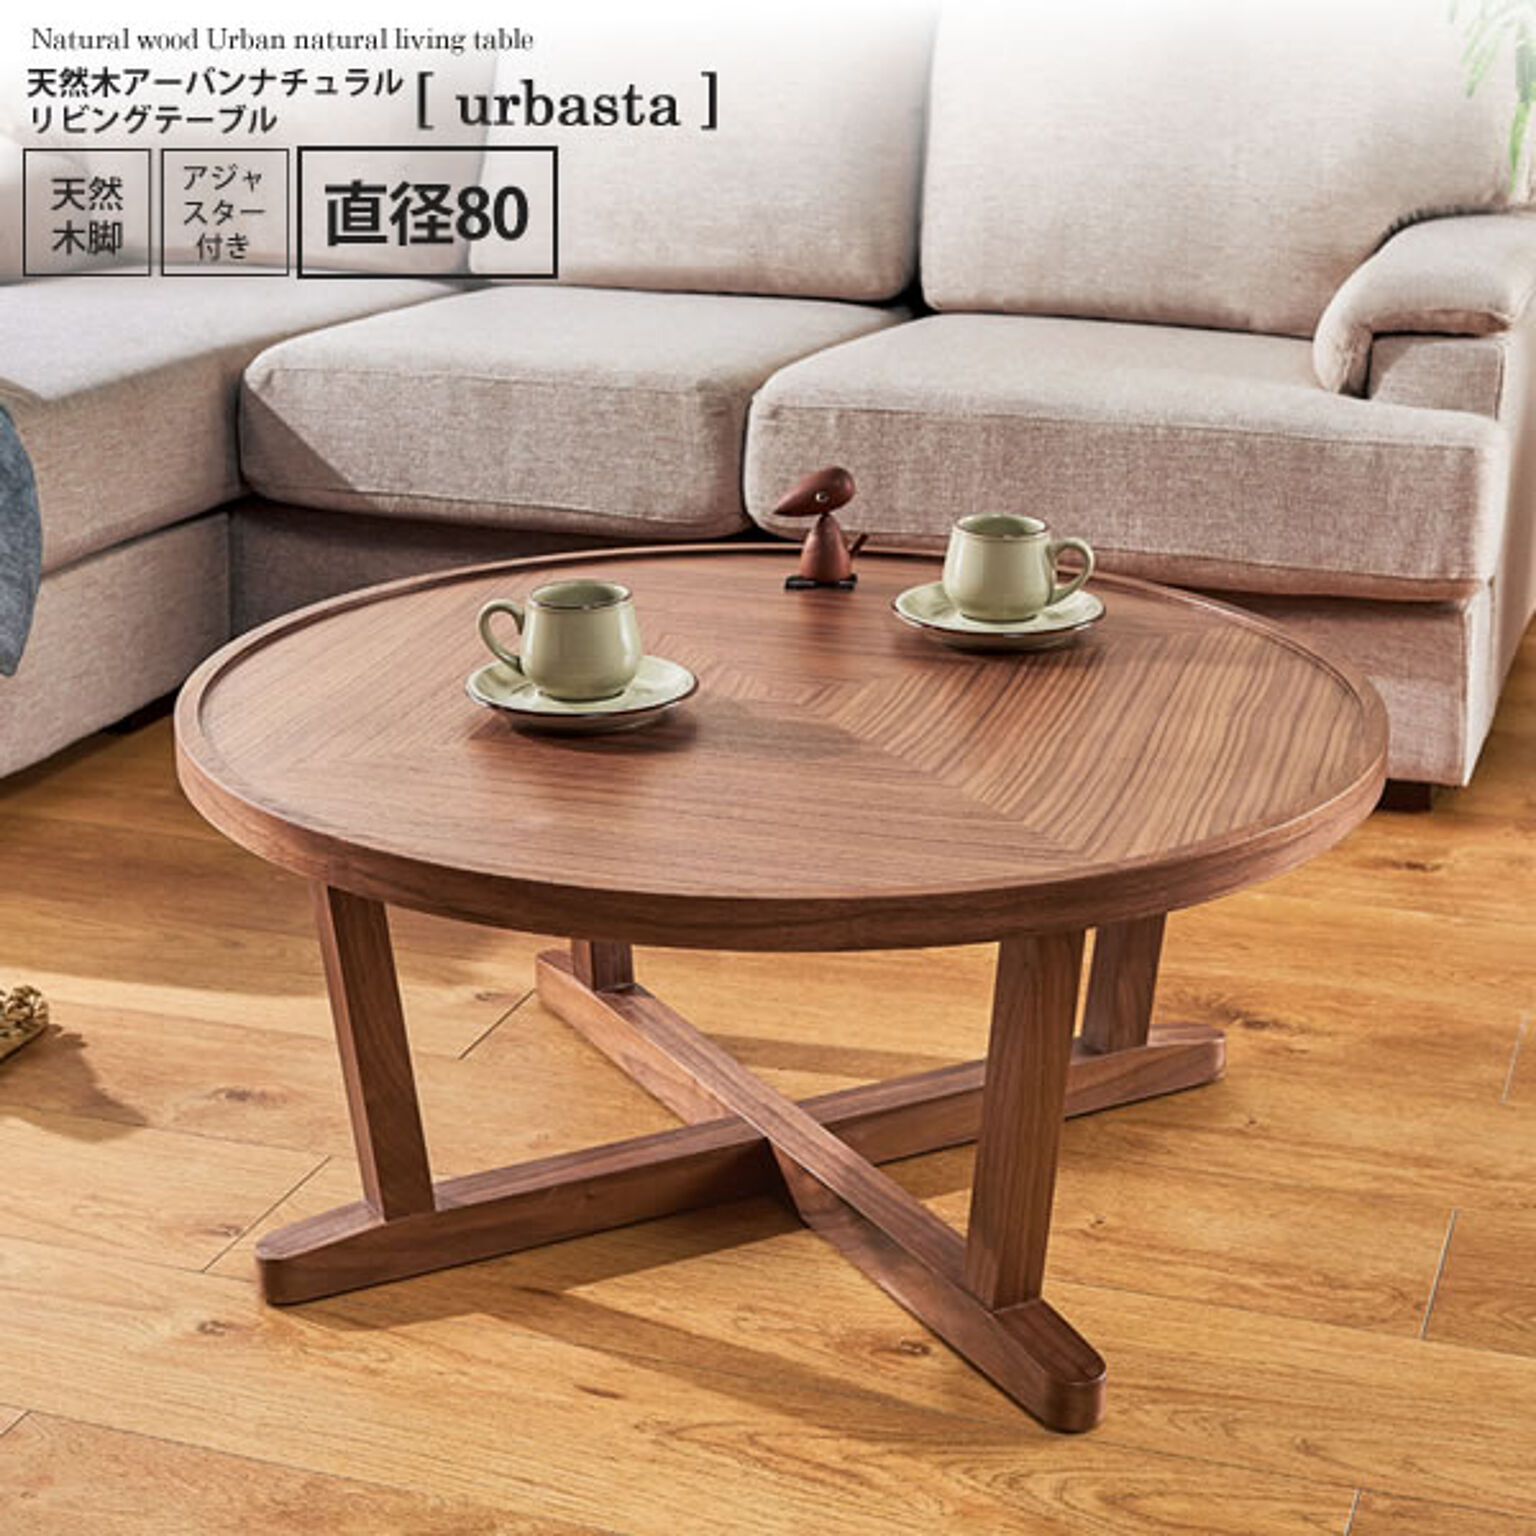 直径80 ： 天然木アーバンナチュラル リビングテーブル【urbasta】 ブラウン(brown) (ナチュラル) センターテーブル コーヒー 円型 円卓 丸型 サークル 